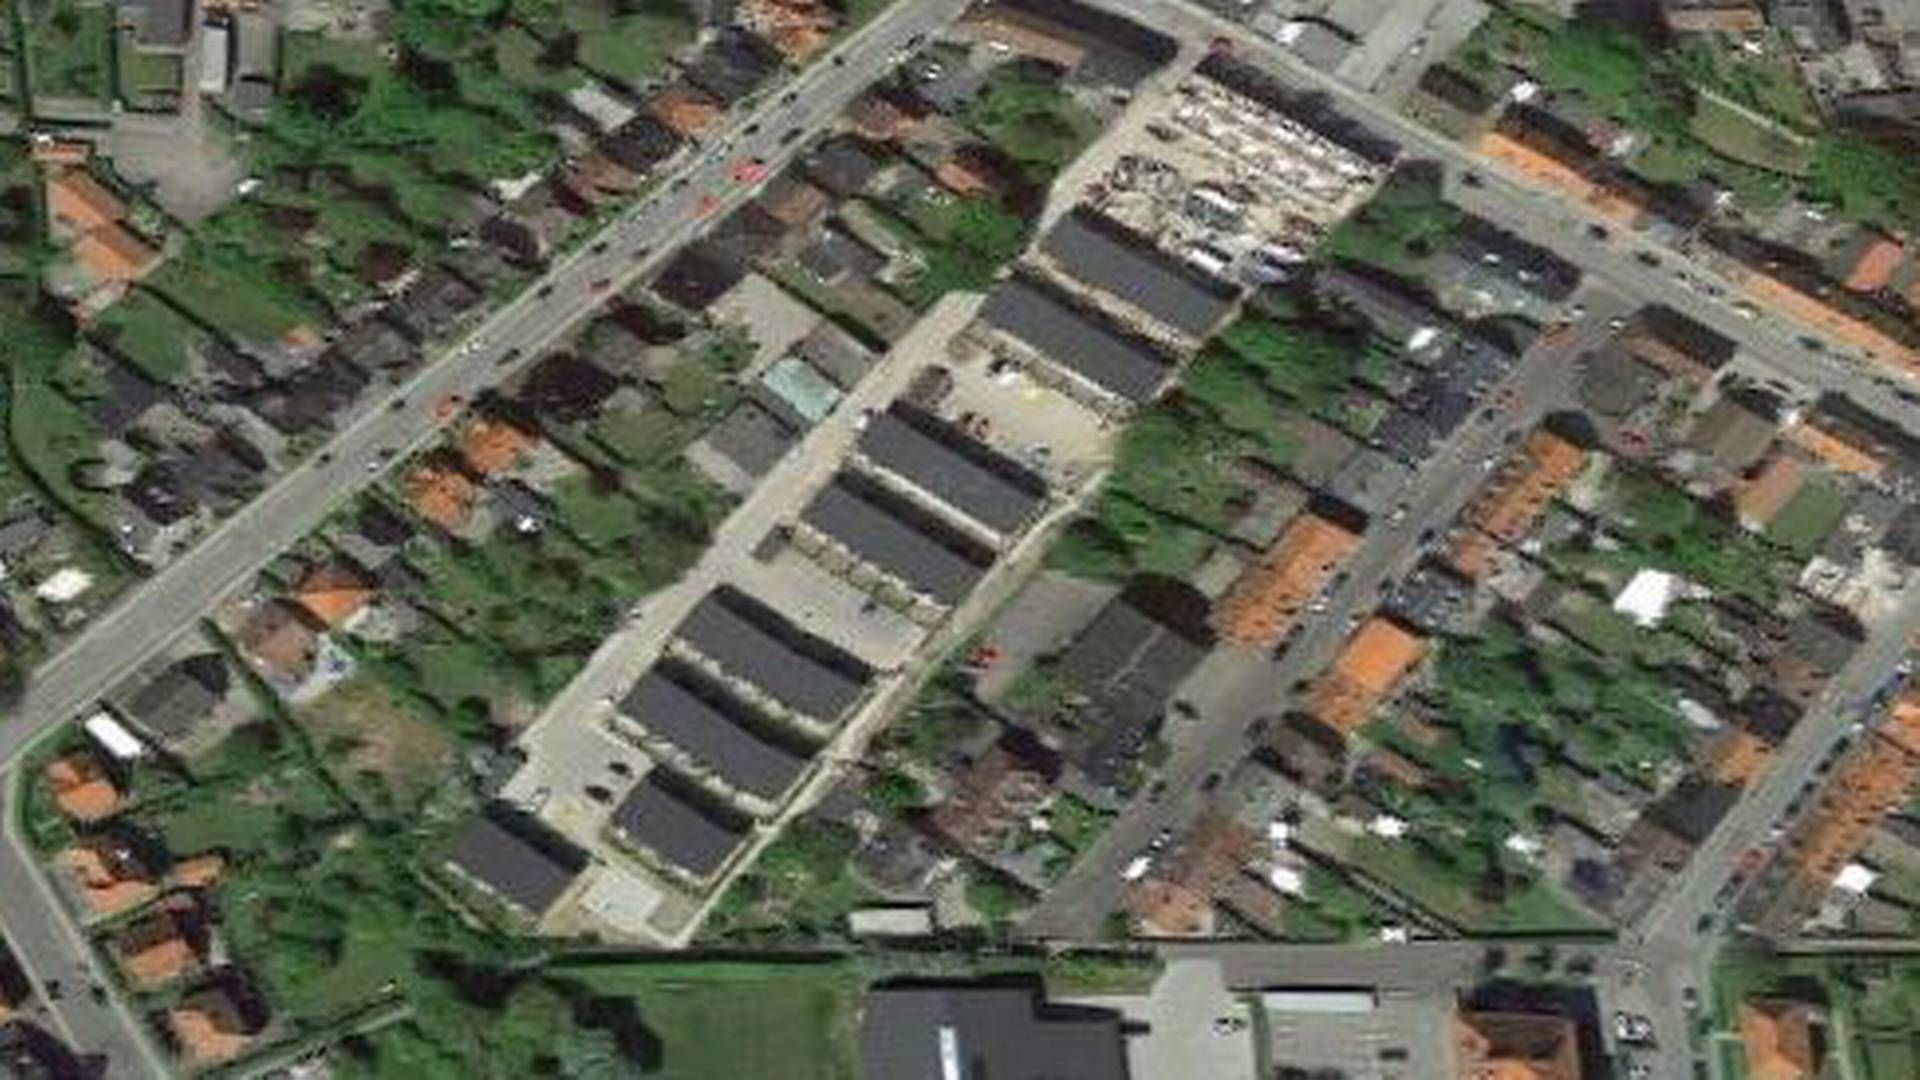 Tidligere lå der en ramponeret skiltefabrik på adressen Løvegade 67 i Slagelse. I dag er boligprojektet realiseret på grunden. | Foto: Google Maps